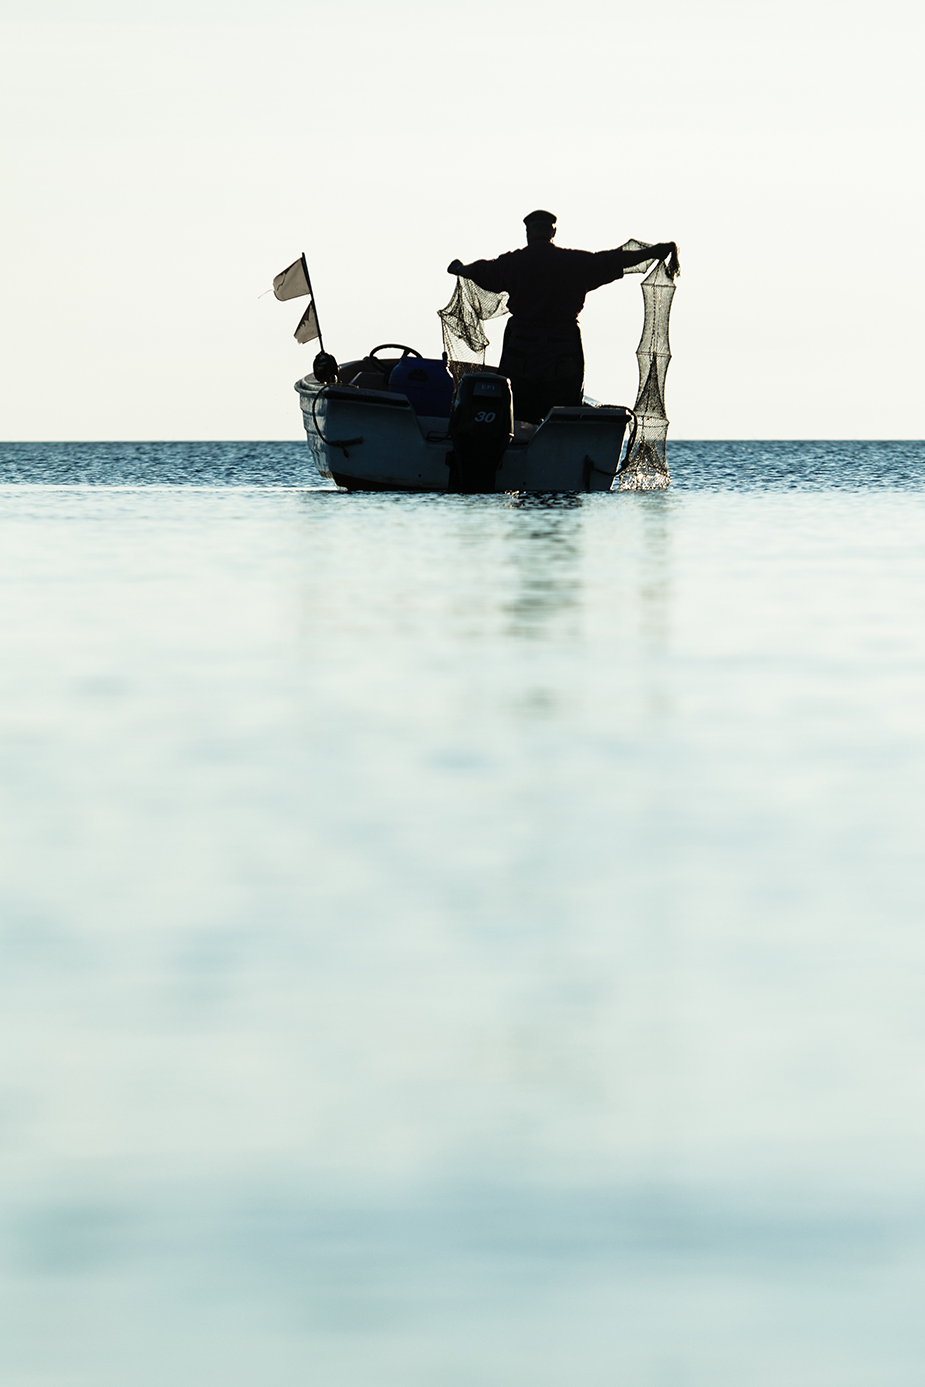 Rügen! Fischer und Landschaft © Iwona Knorr